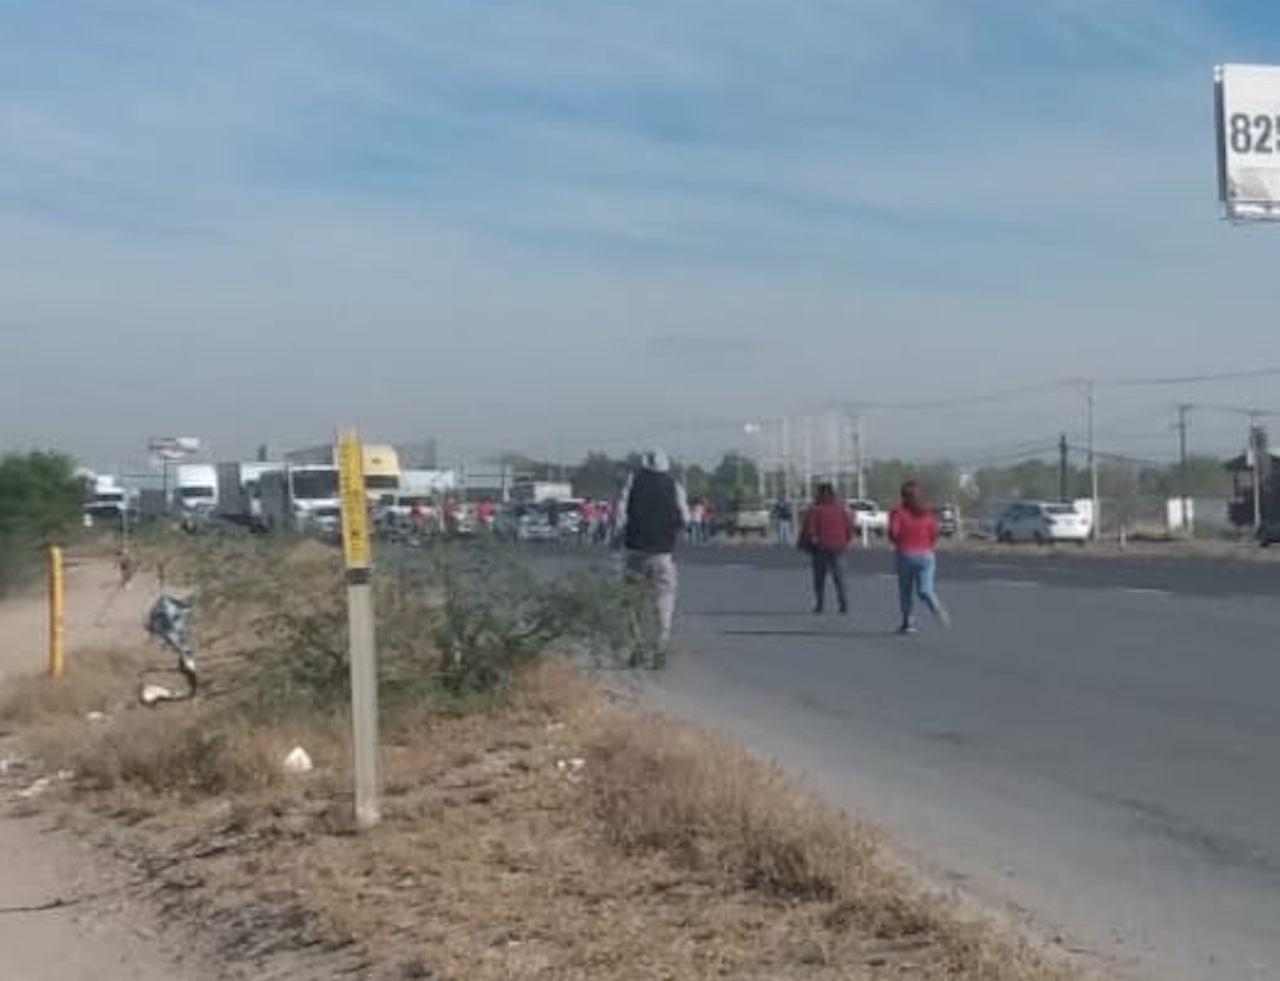 Familiares bloquean la Carretera 57 tras motín en el penal La Pila, SLP